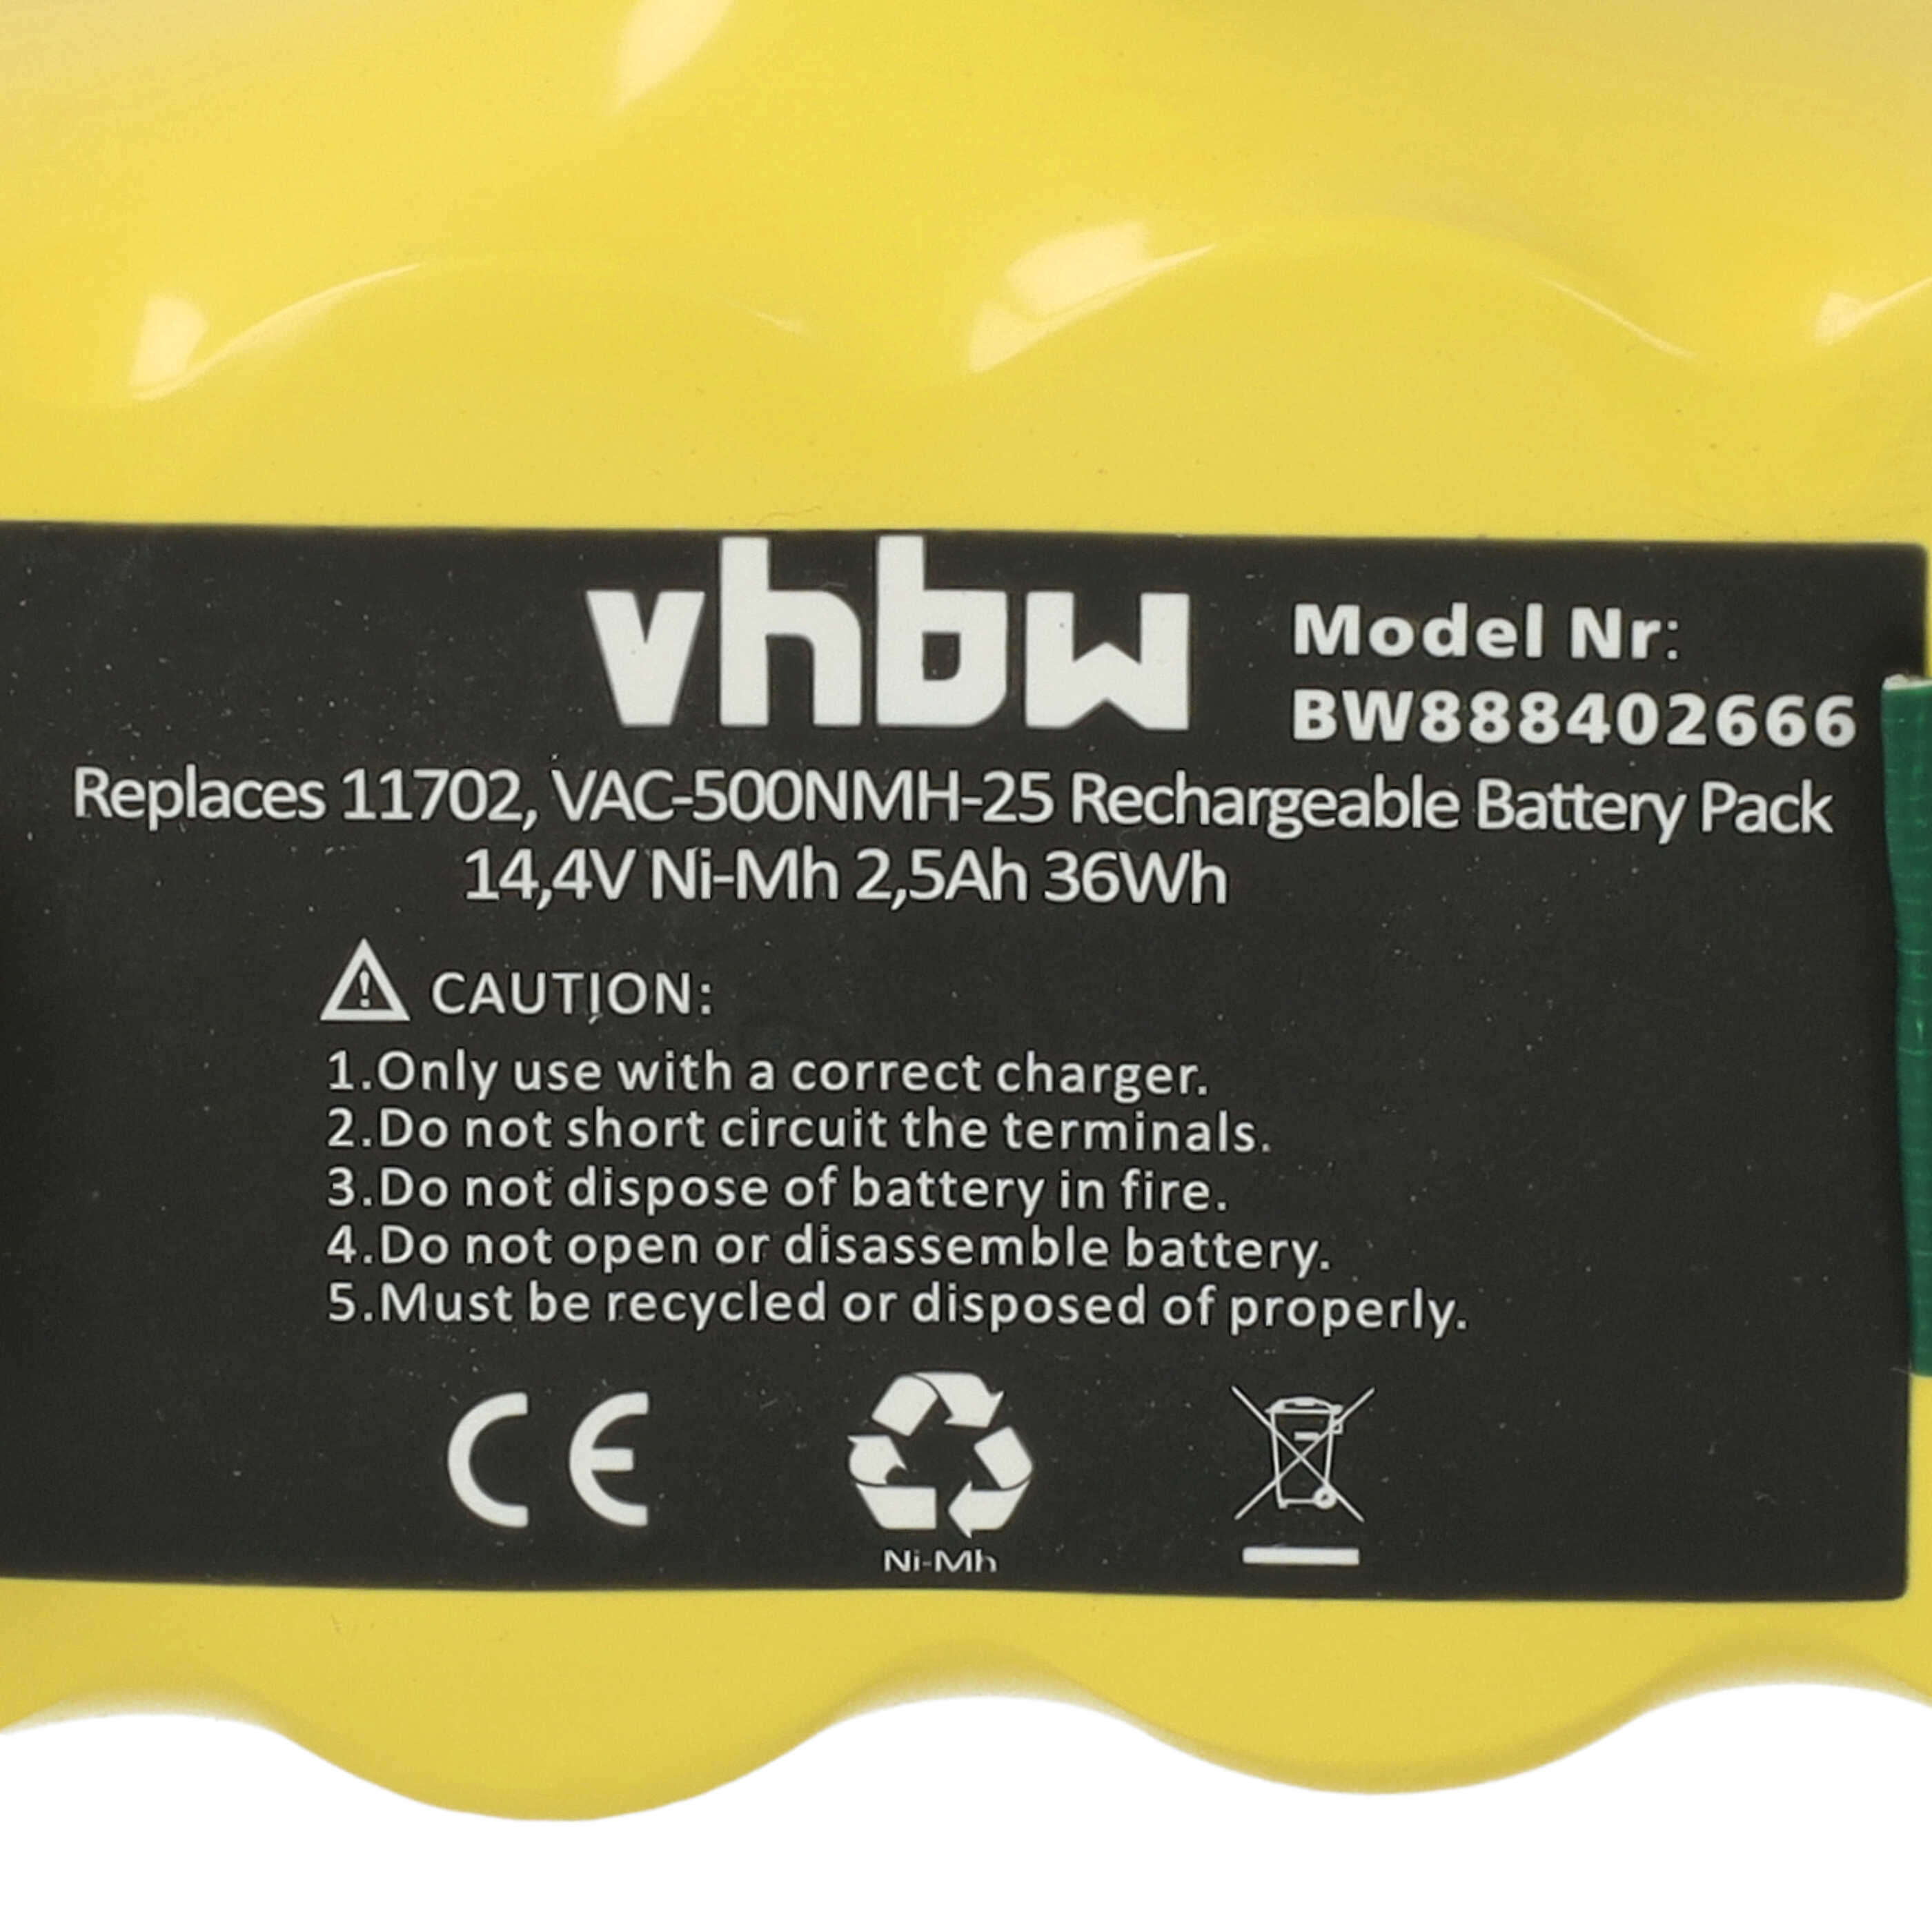 Batterie remplace 80501e, 80601, 11702, 68939, 80501, 4419696 pour robot aspirateur - 2500mAh 14,4V NiMH